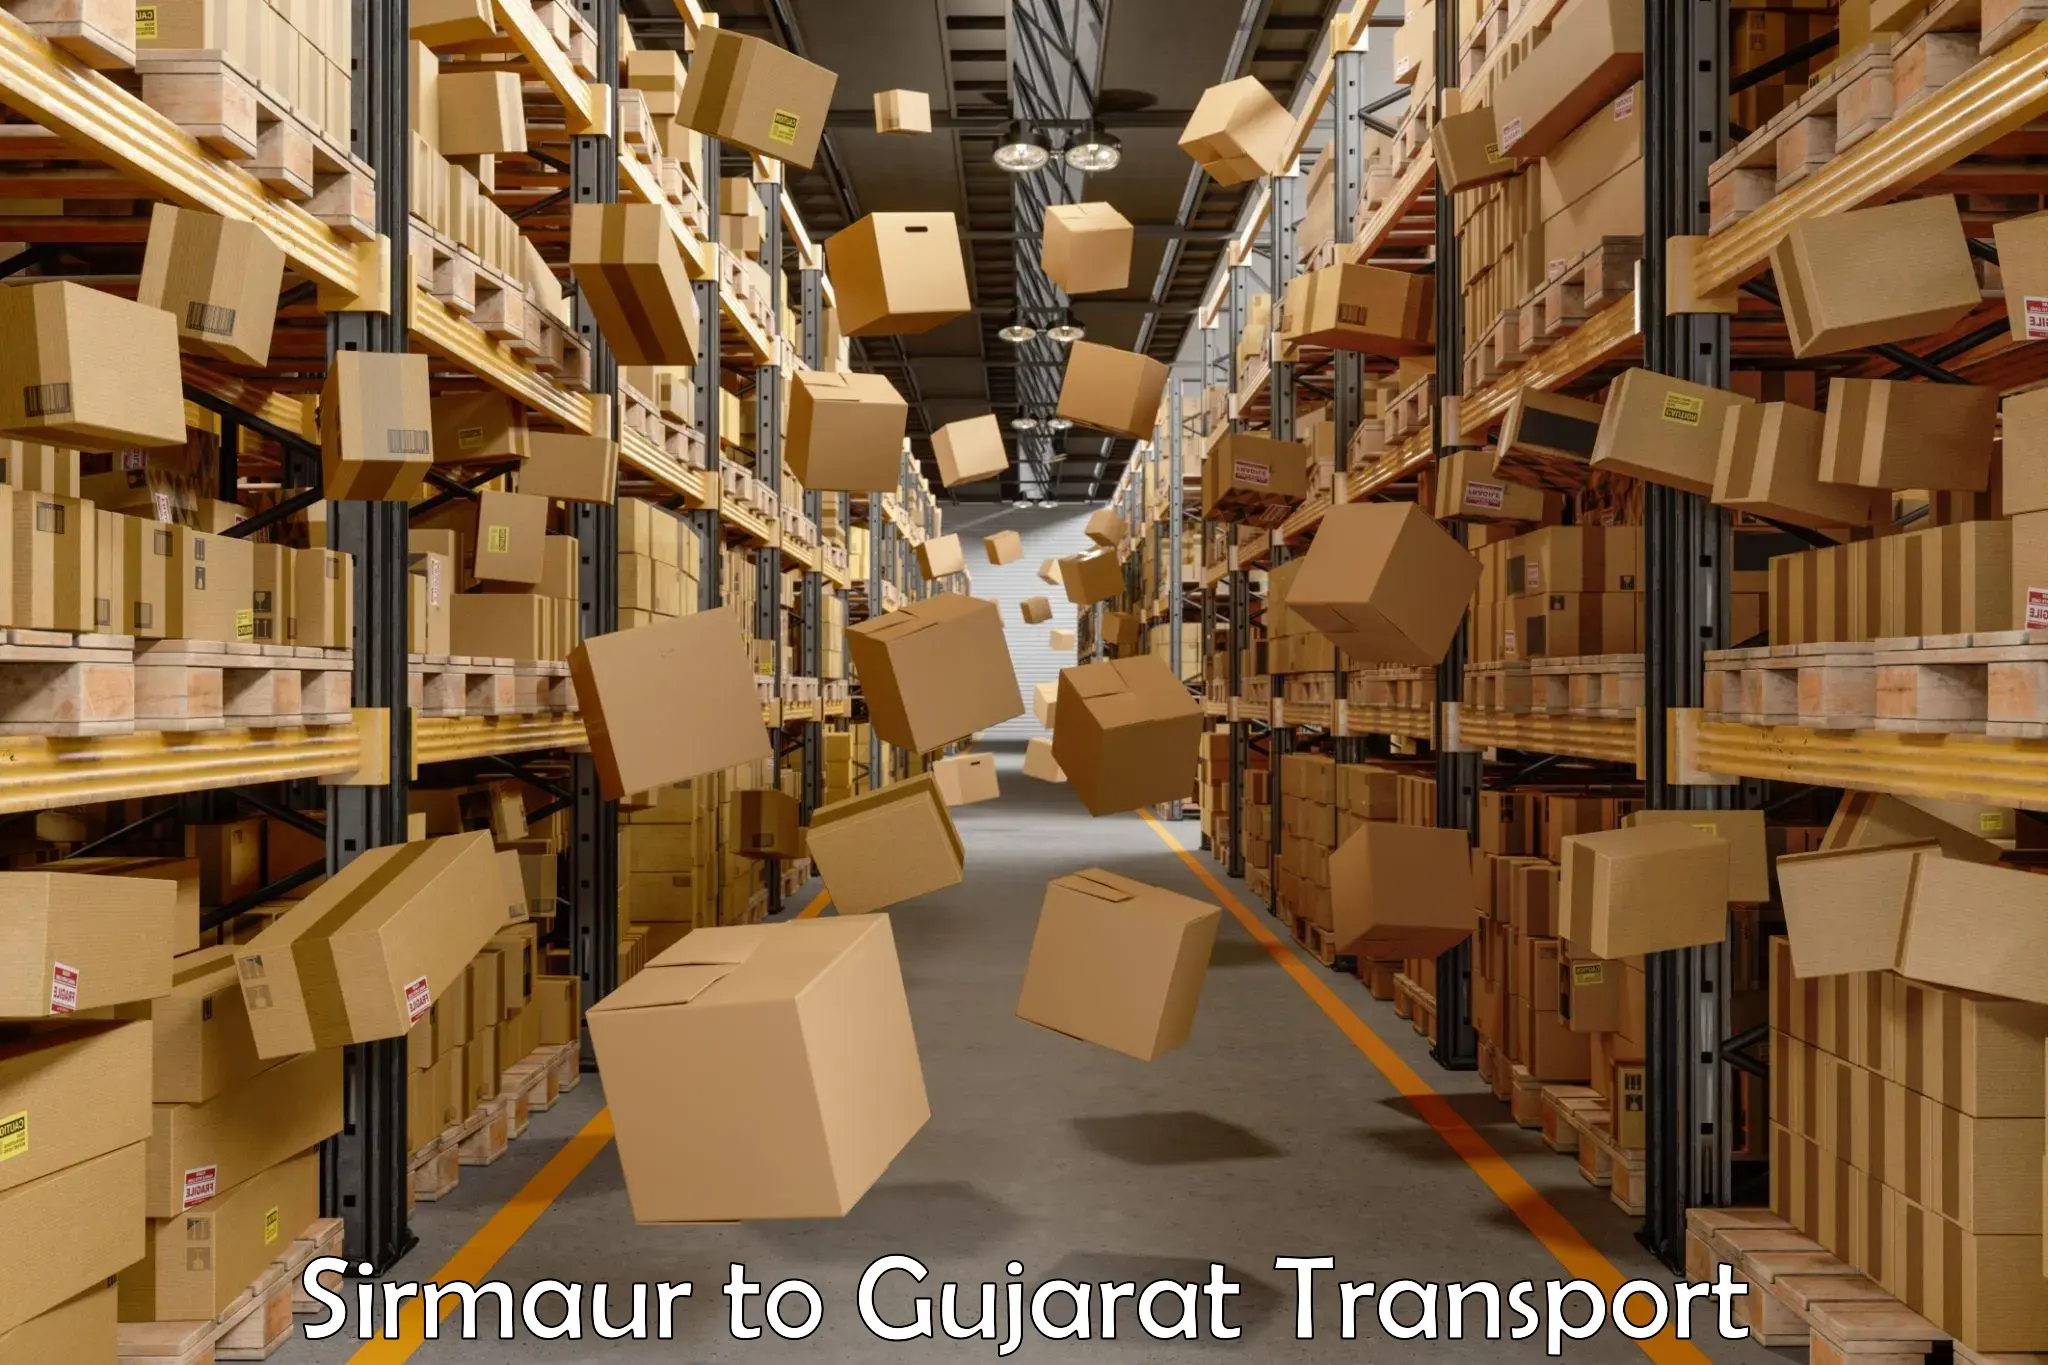 Commercial transport service Sirmaur to Himmatnagar